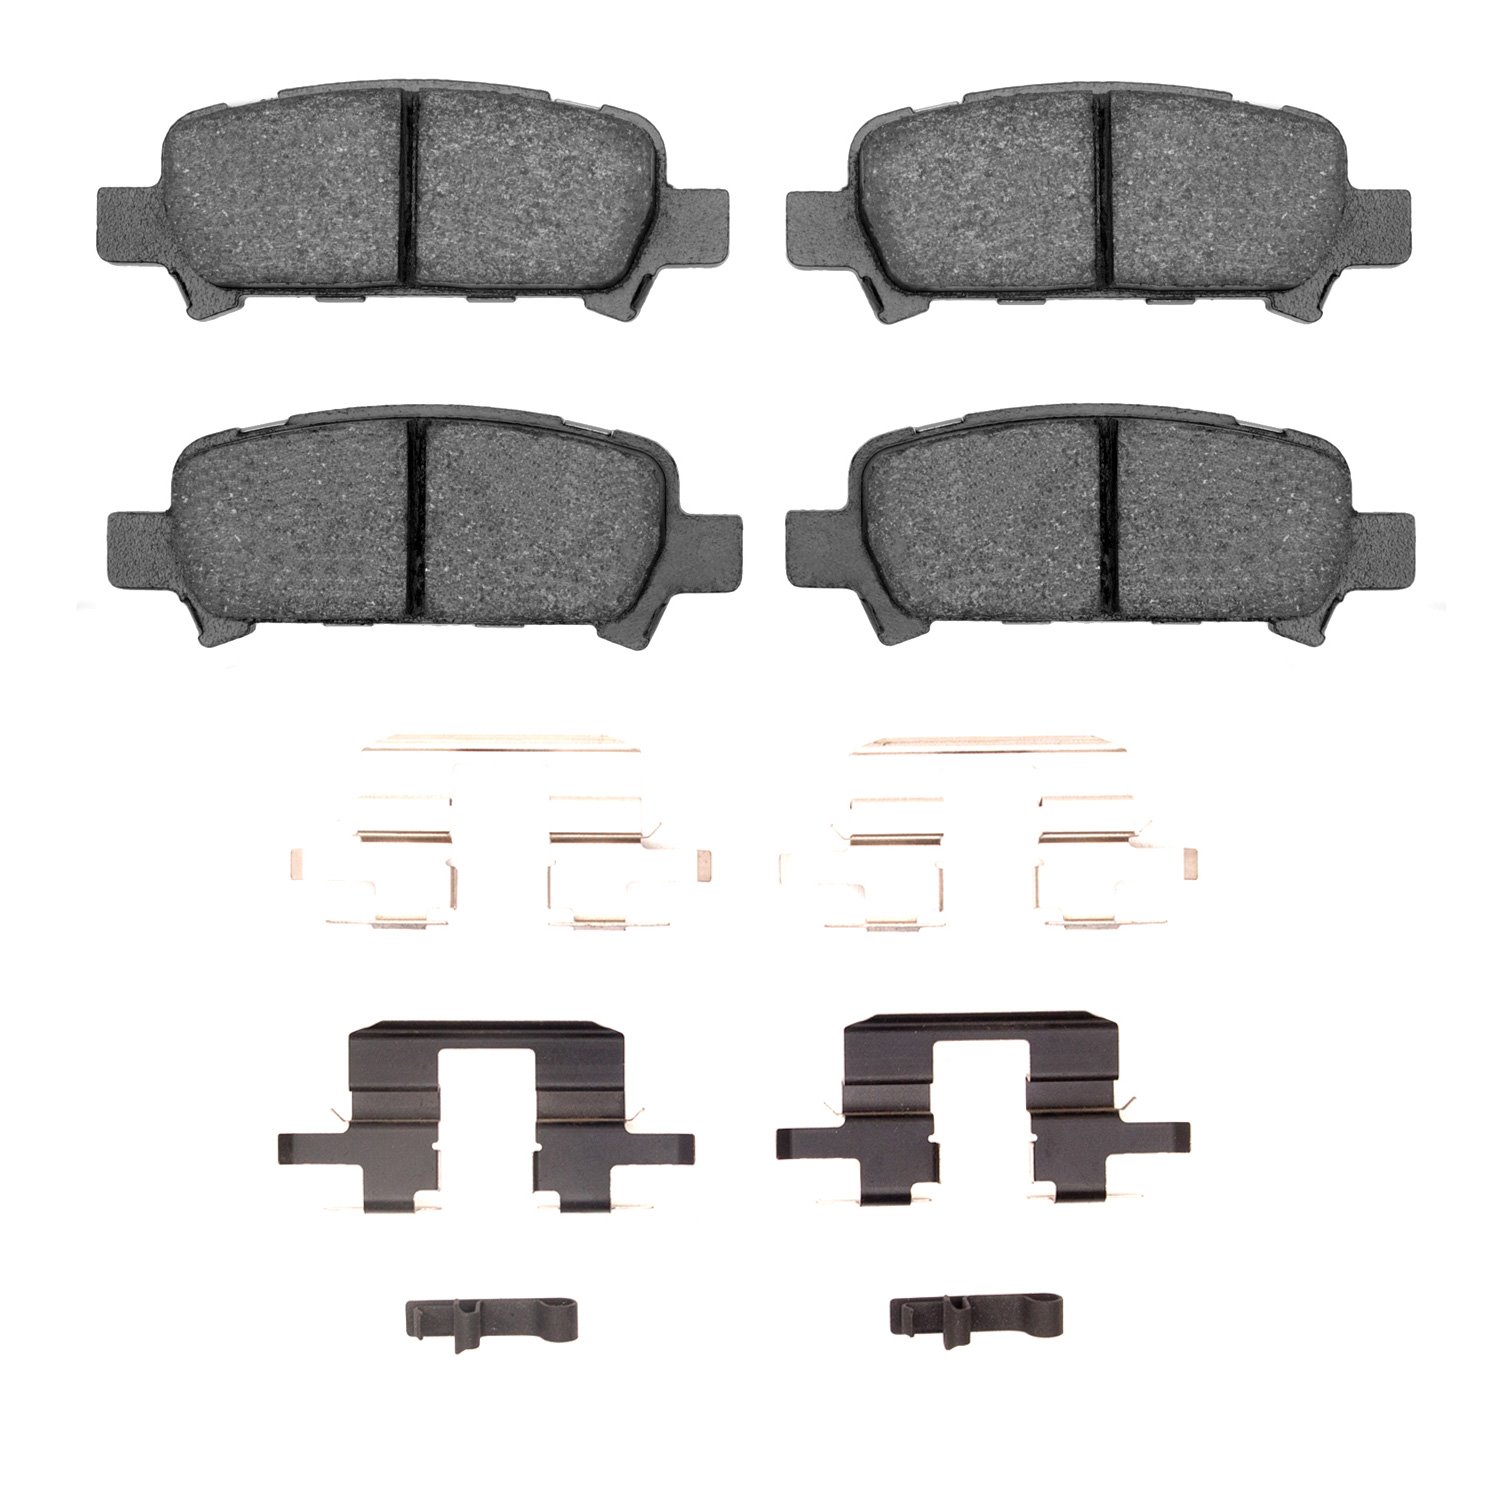 1311-0770-01 3000-Series Semi-Metallic Brake Pads & Hardware Kit, 1998-2006 Subaru, Position: Rear